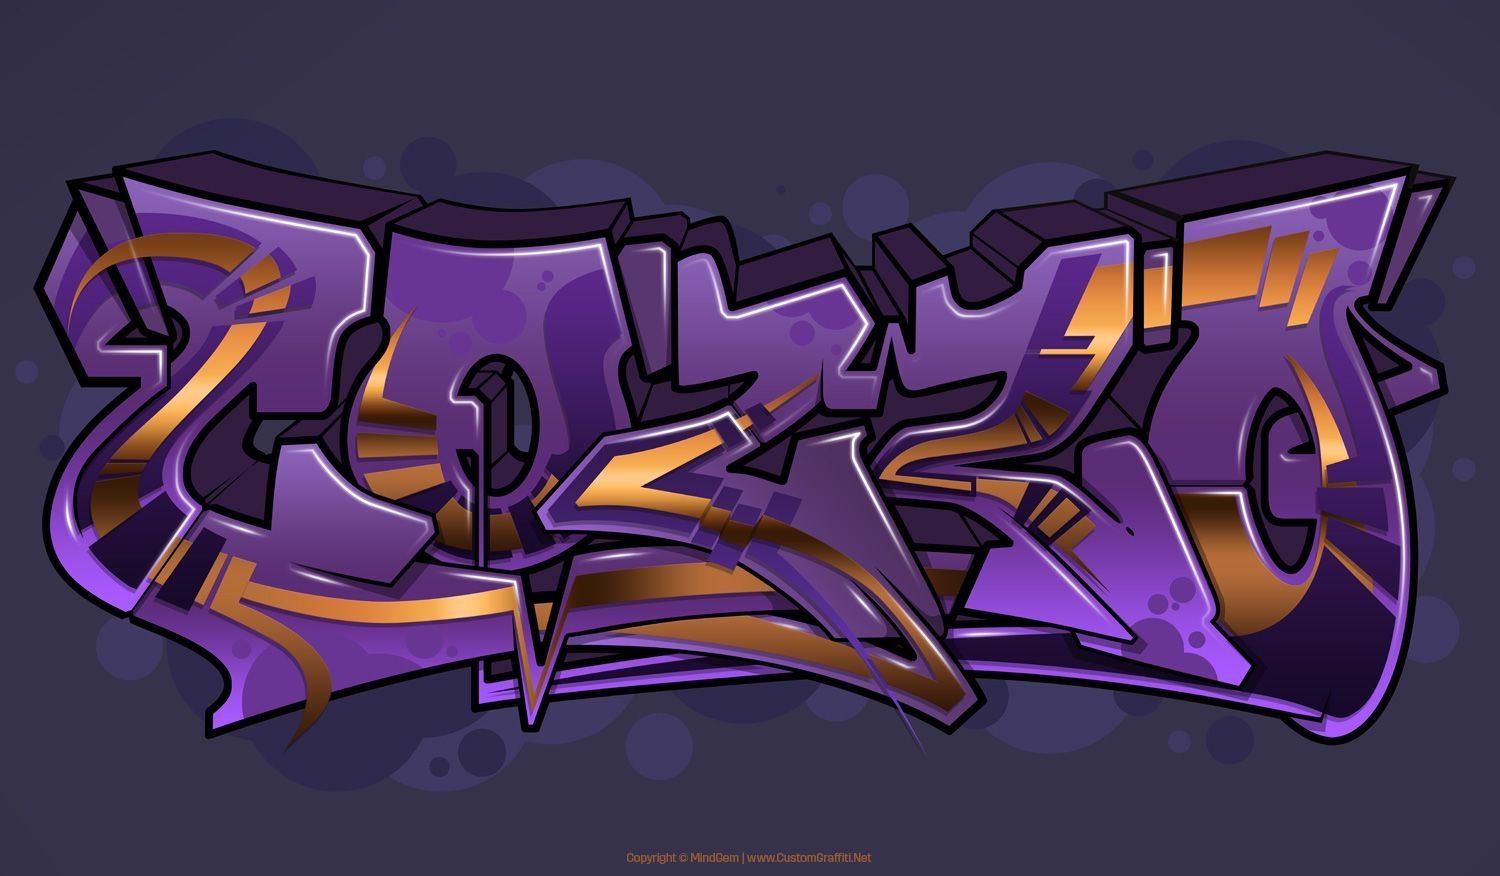 Шрифт standoff 2. Граффити. Фиолетовое граффити. Рисунки в стиле граффити. Динамичный стиль граффити.